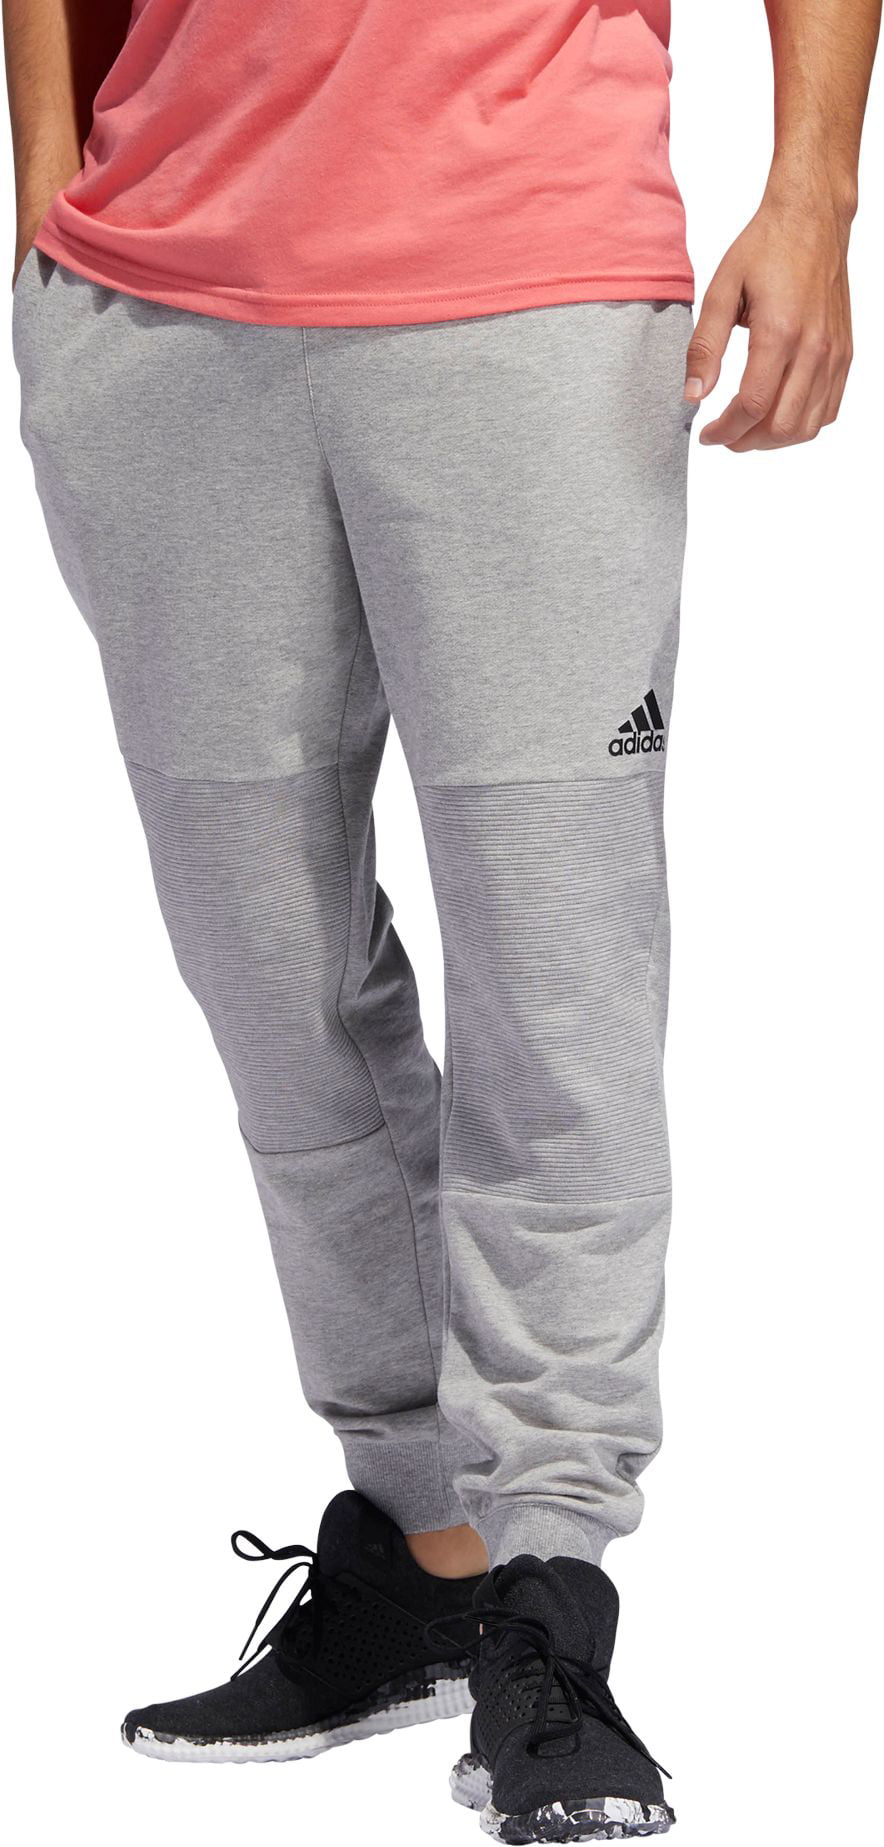 Adidas - adidas Men's Post Game 7/8 Length Jogger Pants - Walmart.com ...